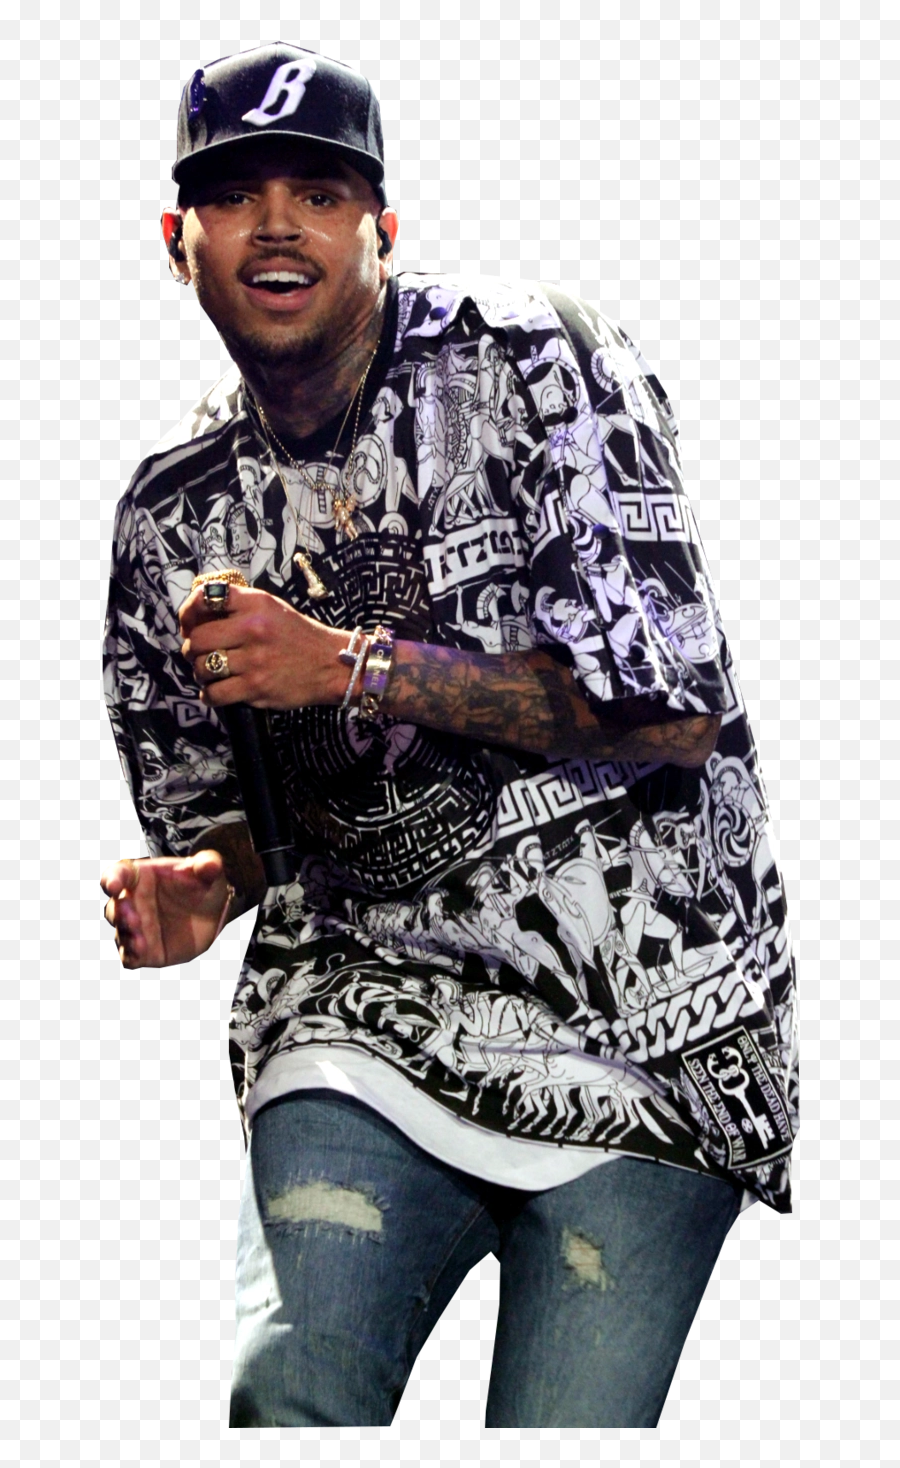 Download Free Png Chris Brown - Chris Brown Png Transparent,Chris Brown Png